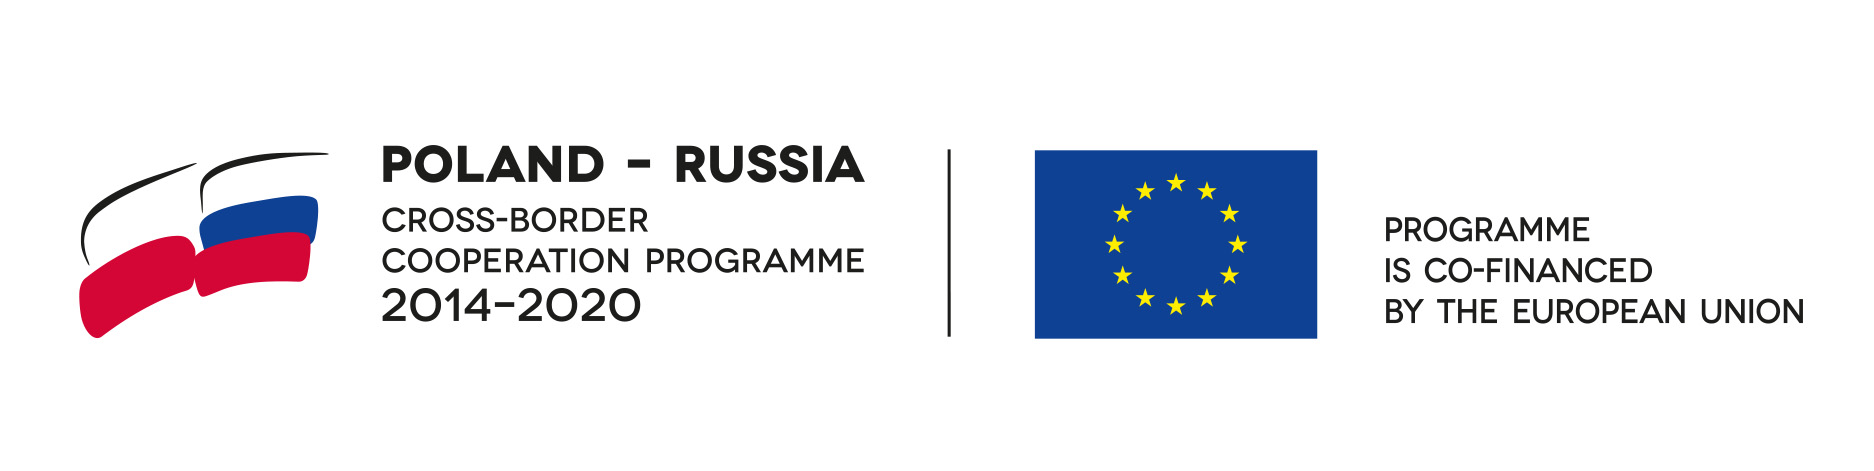 Flagi Polski, Rosji i Unii Europejskiej. Napis: transgraniczny program współpracy. Program współfinansowany przez Unię Europejską.